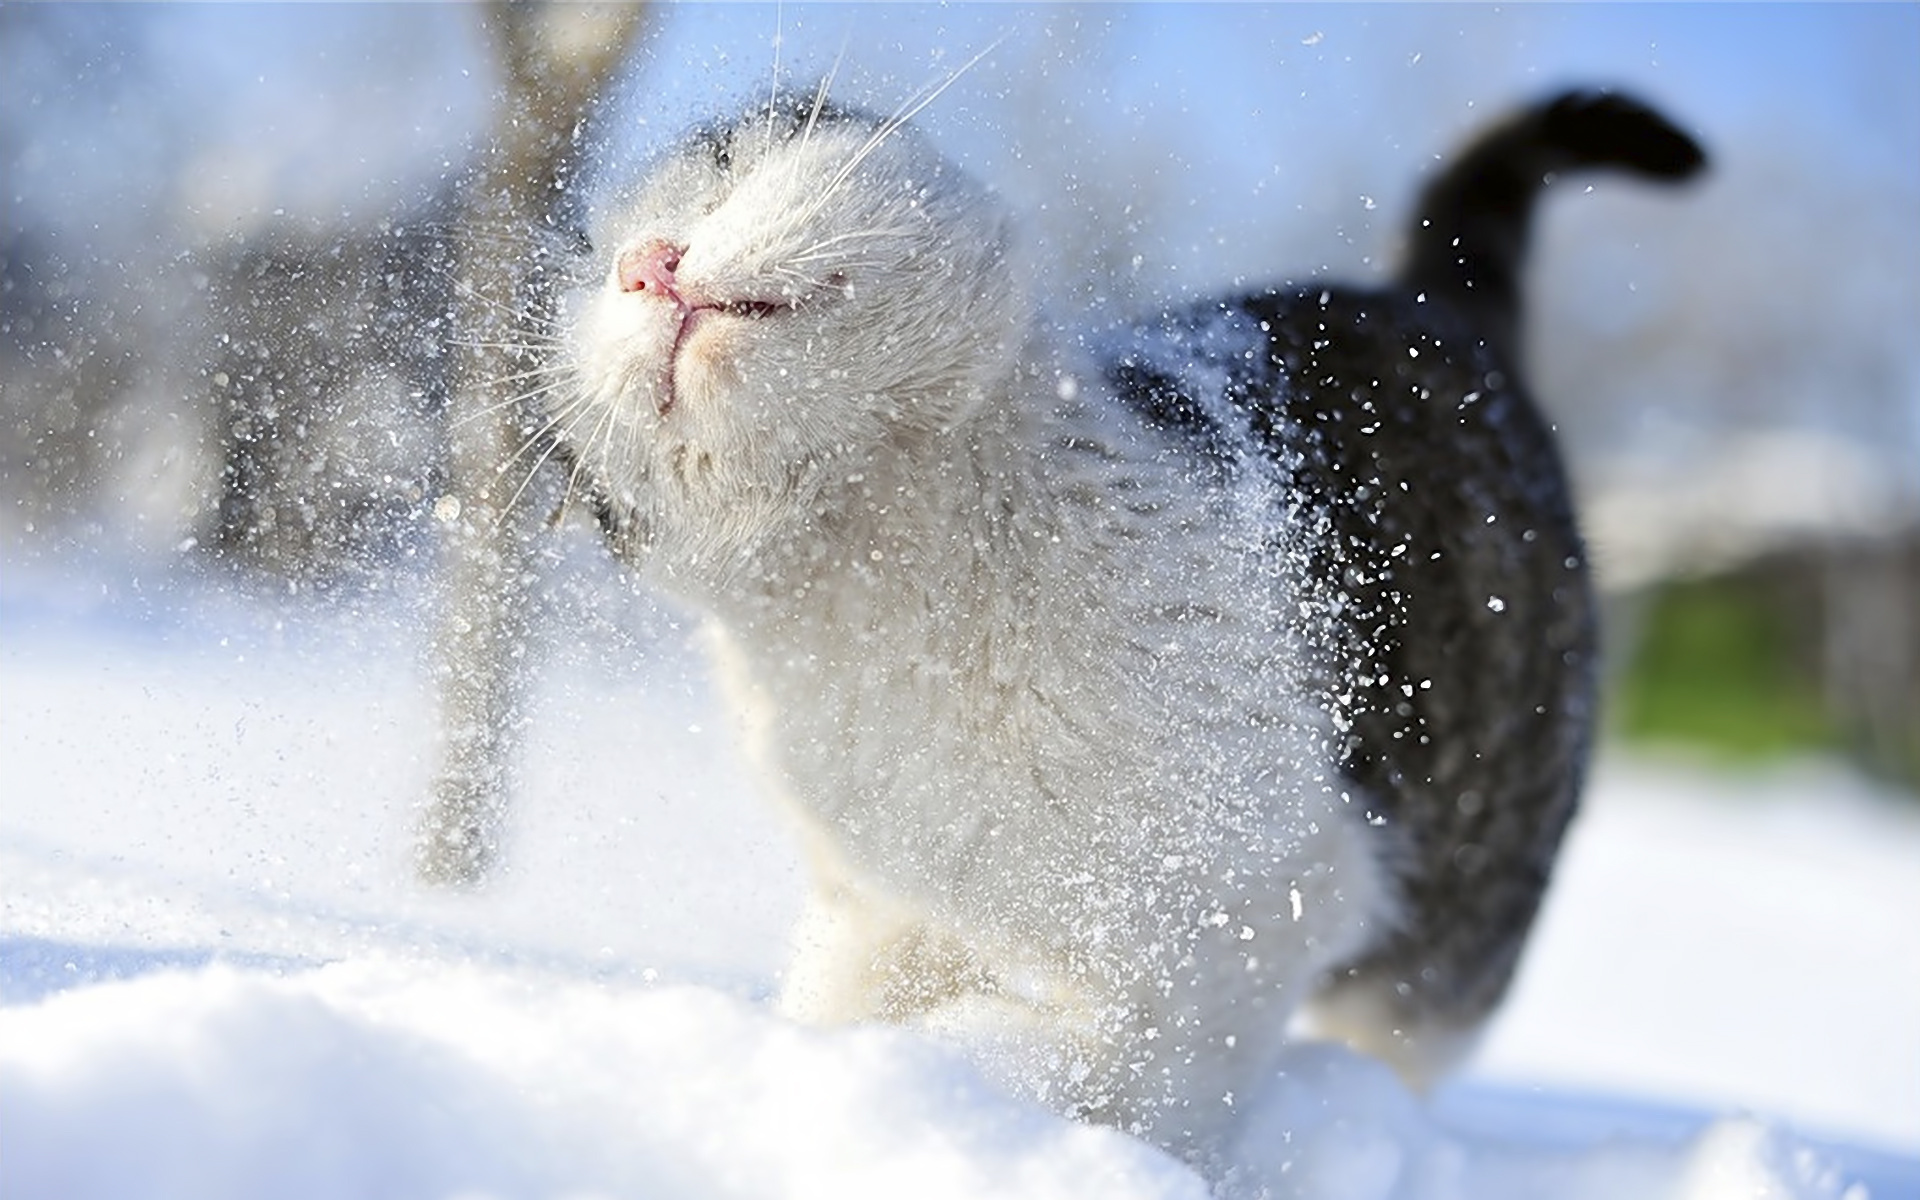 download wallpaper: kat in de sneeuw wallpaper